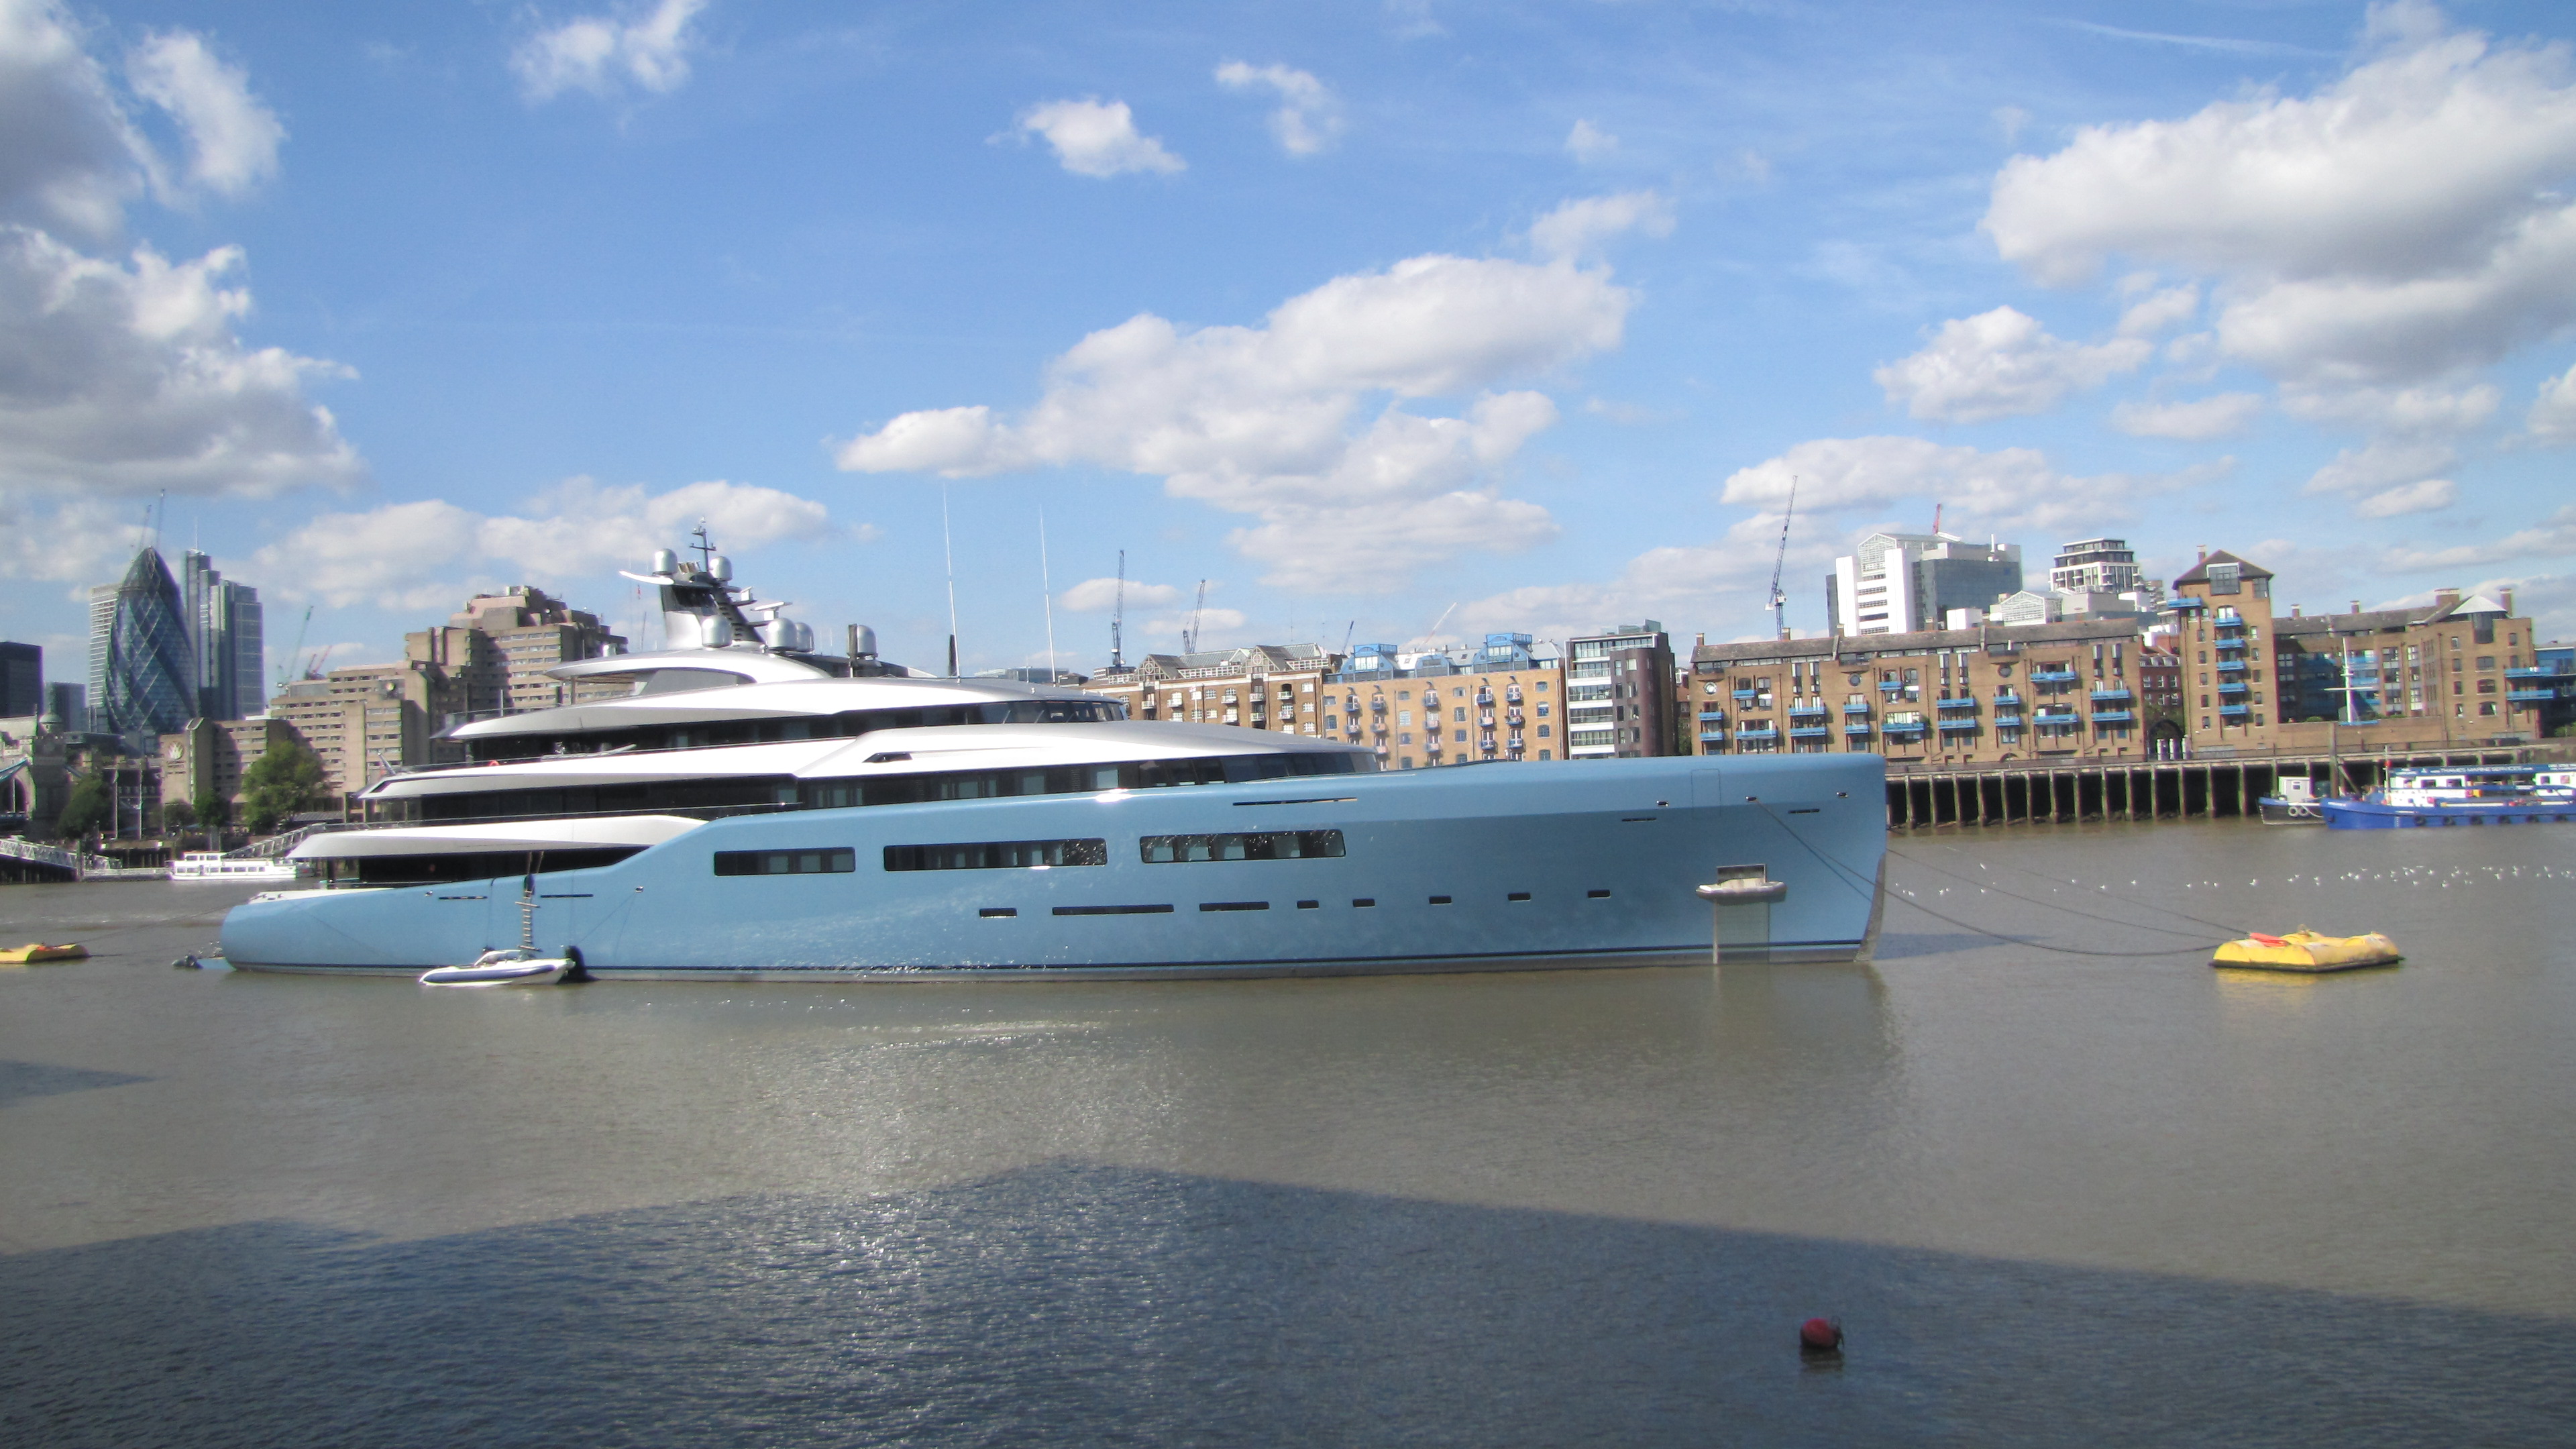 А вот и Aviva Yacht рабочее место за 150 млн долларов Джо Льюиса, владельца лондонской футбольной команды «Тоттенхэм Хотспурс» 